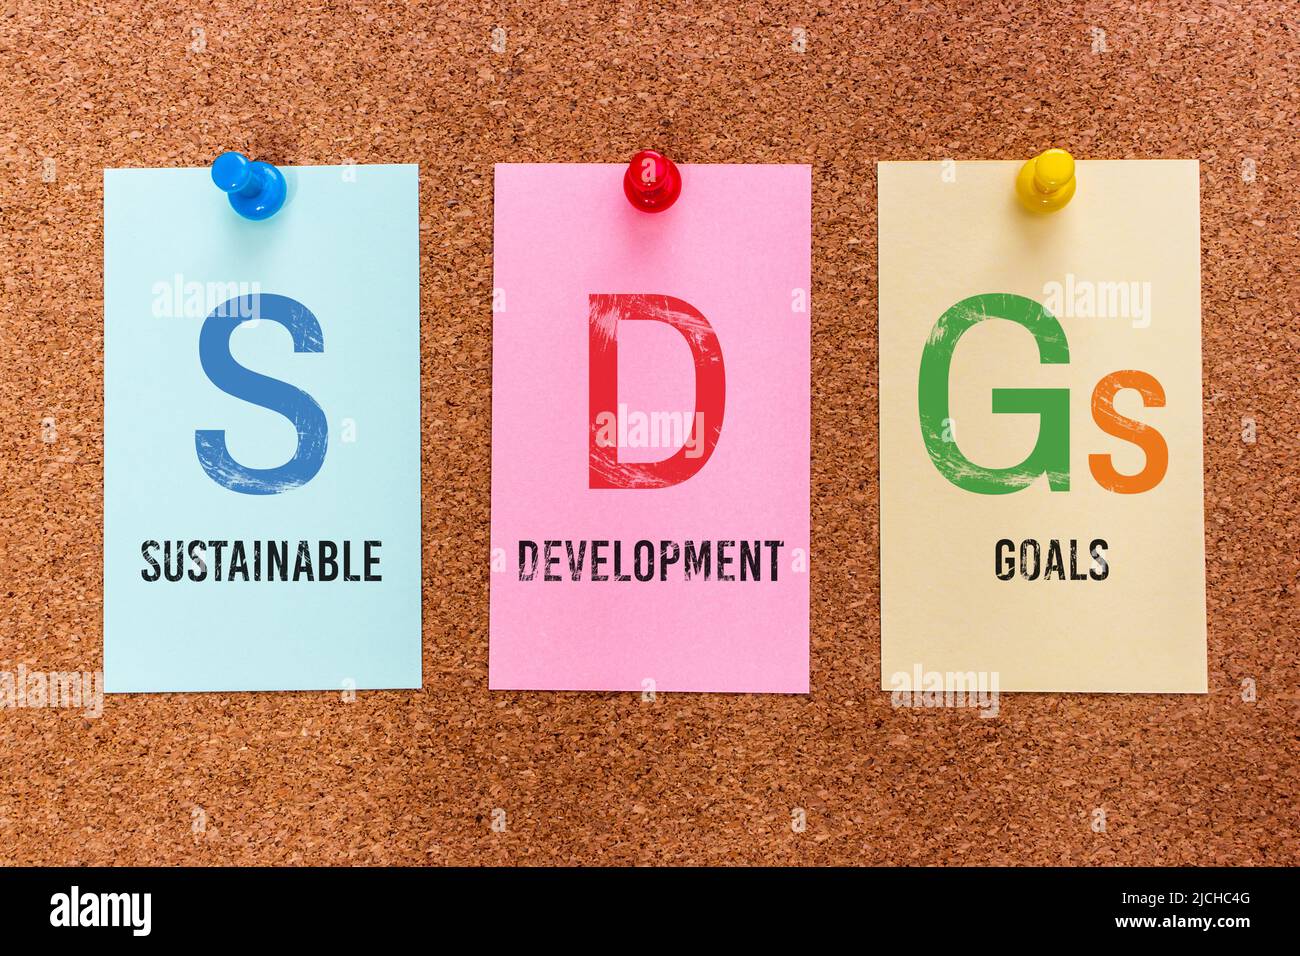 Concettuale 3 lettere parola chiave SDGs (obiettivi di sviluppo sostenibile), su adesivi multicolore attaccati ad un bordo di sughero. Foto Stock